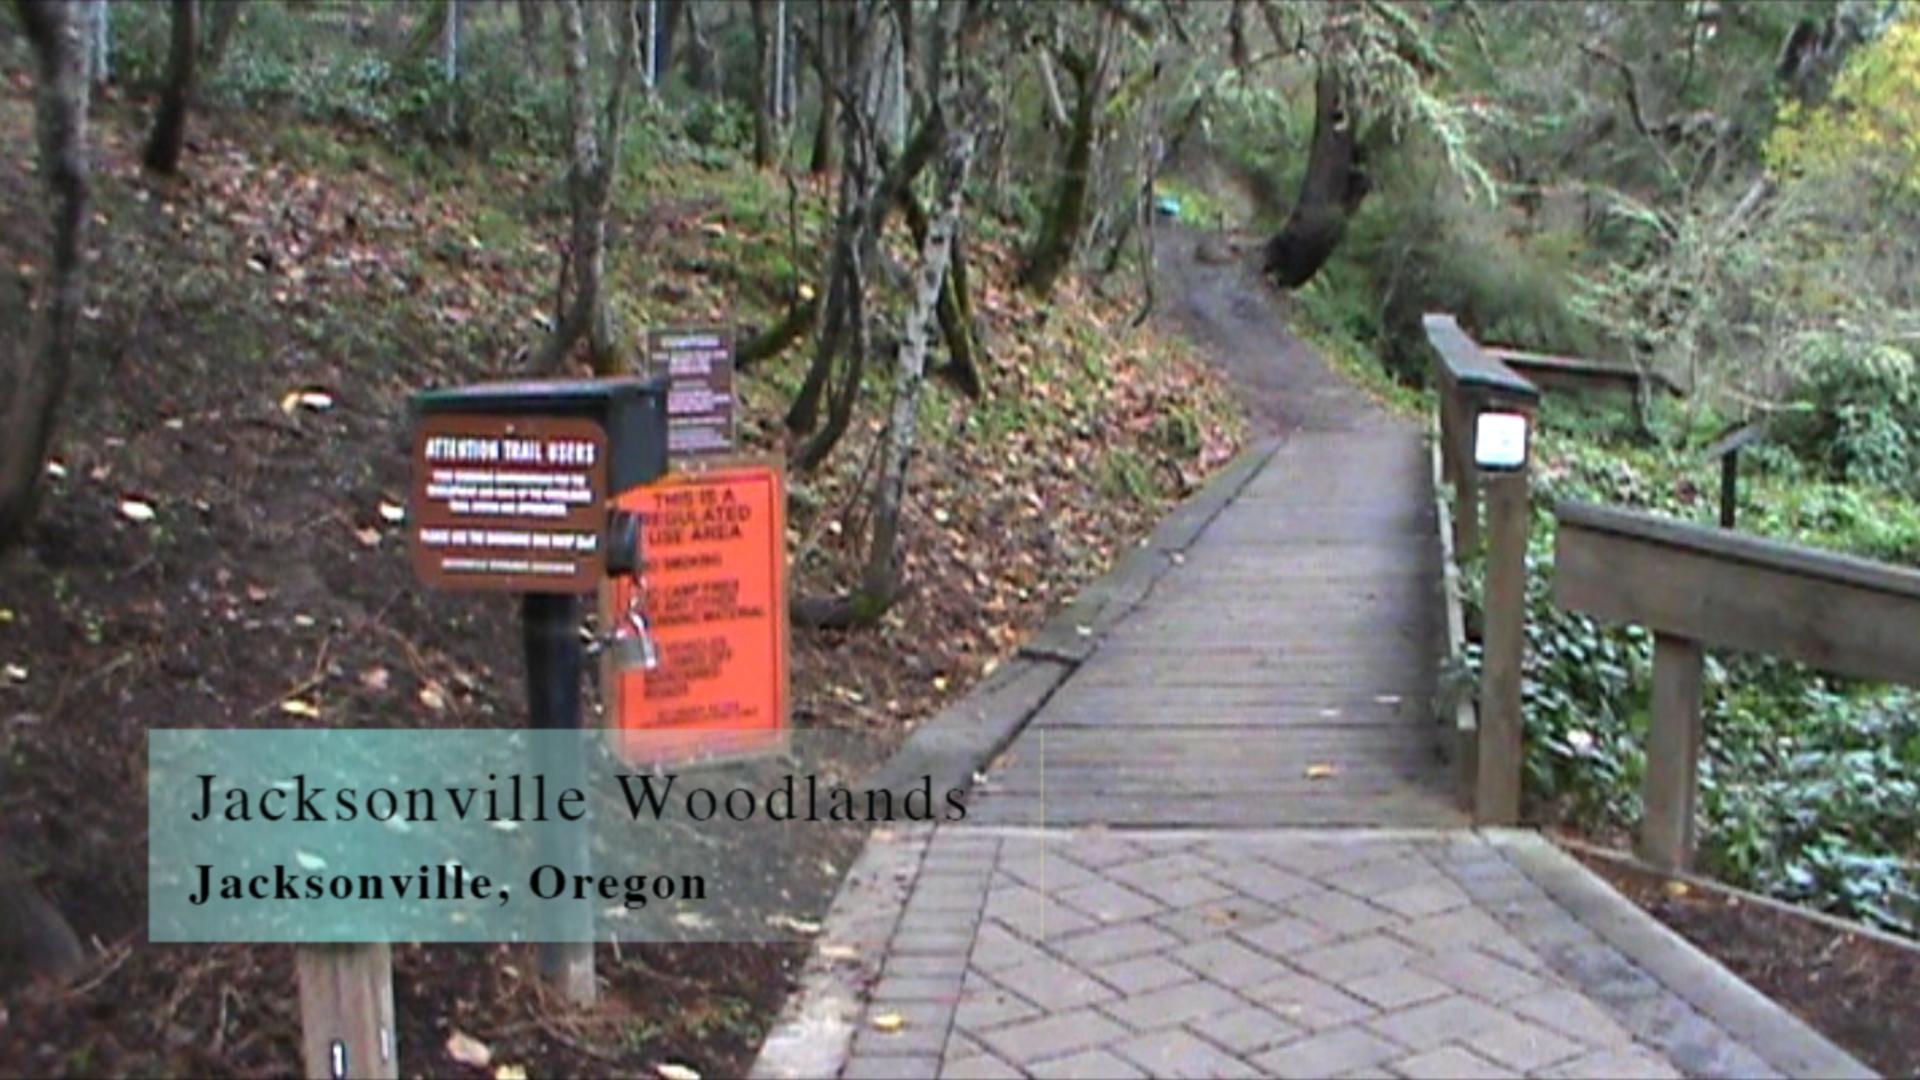 Jacksonville Woodlands Trails